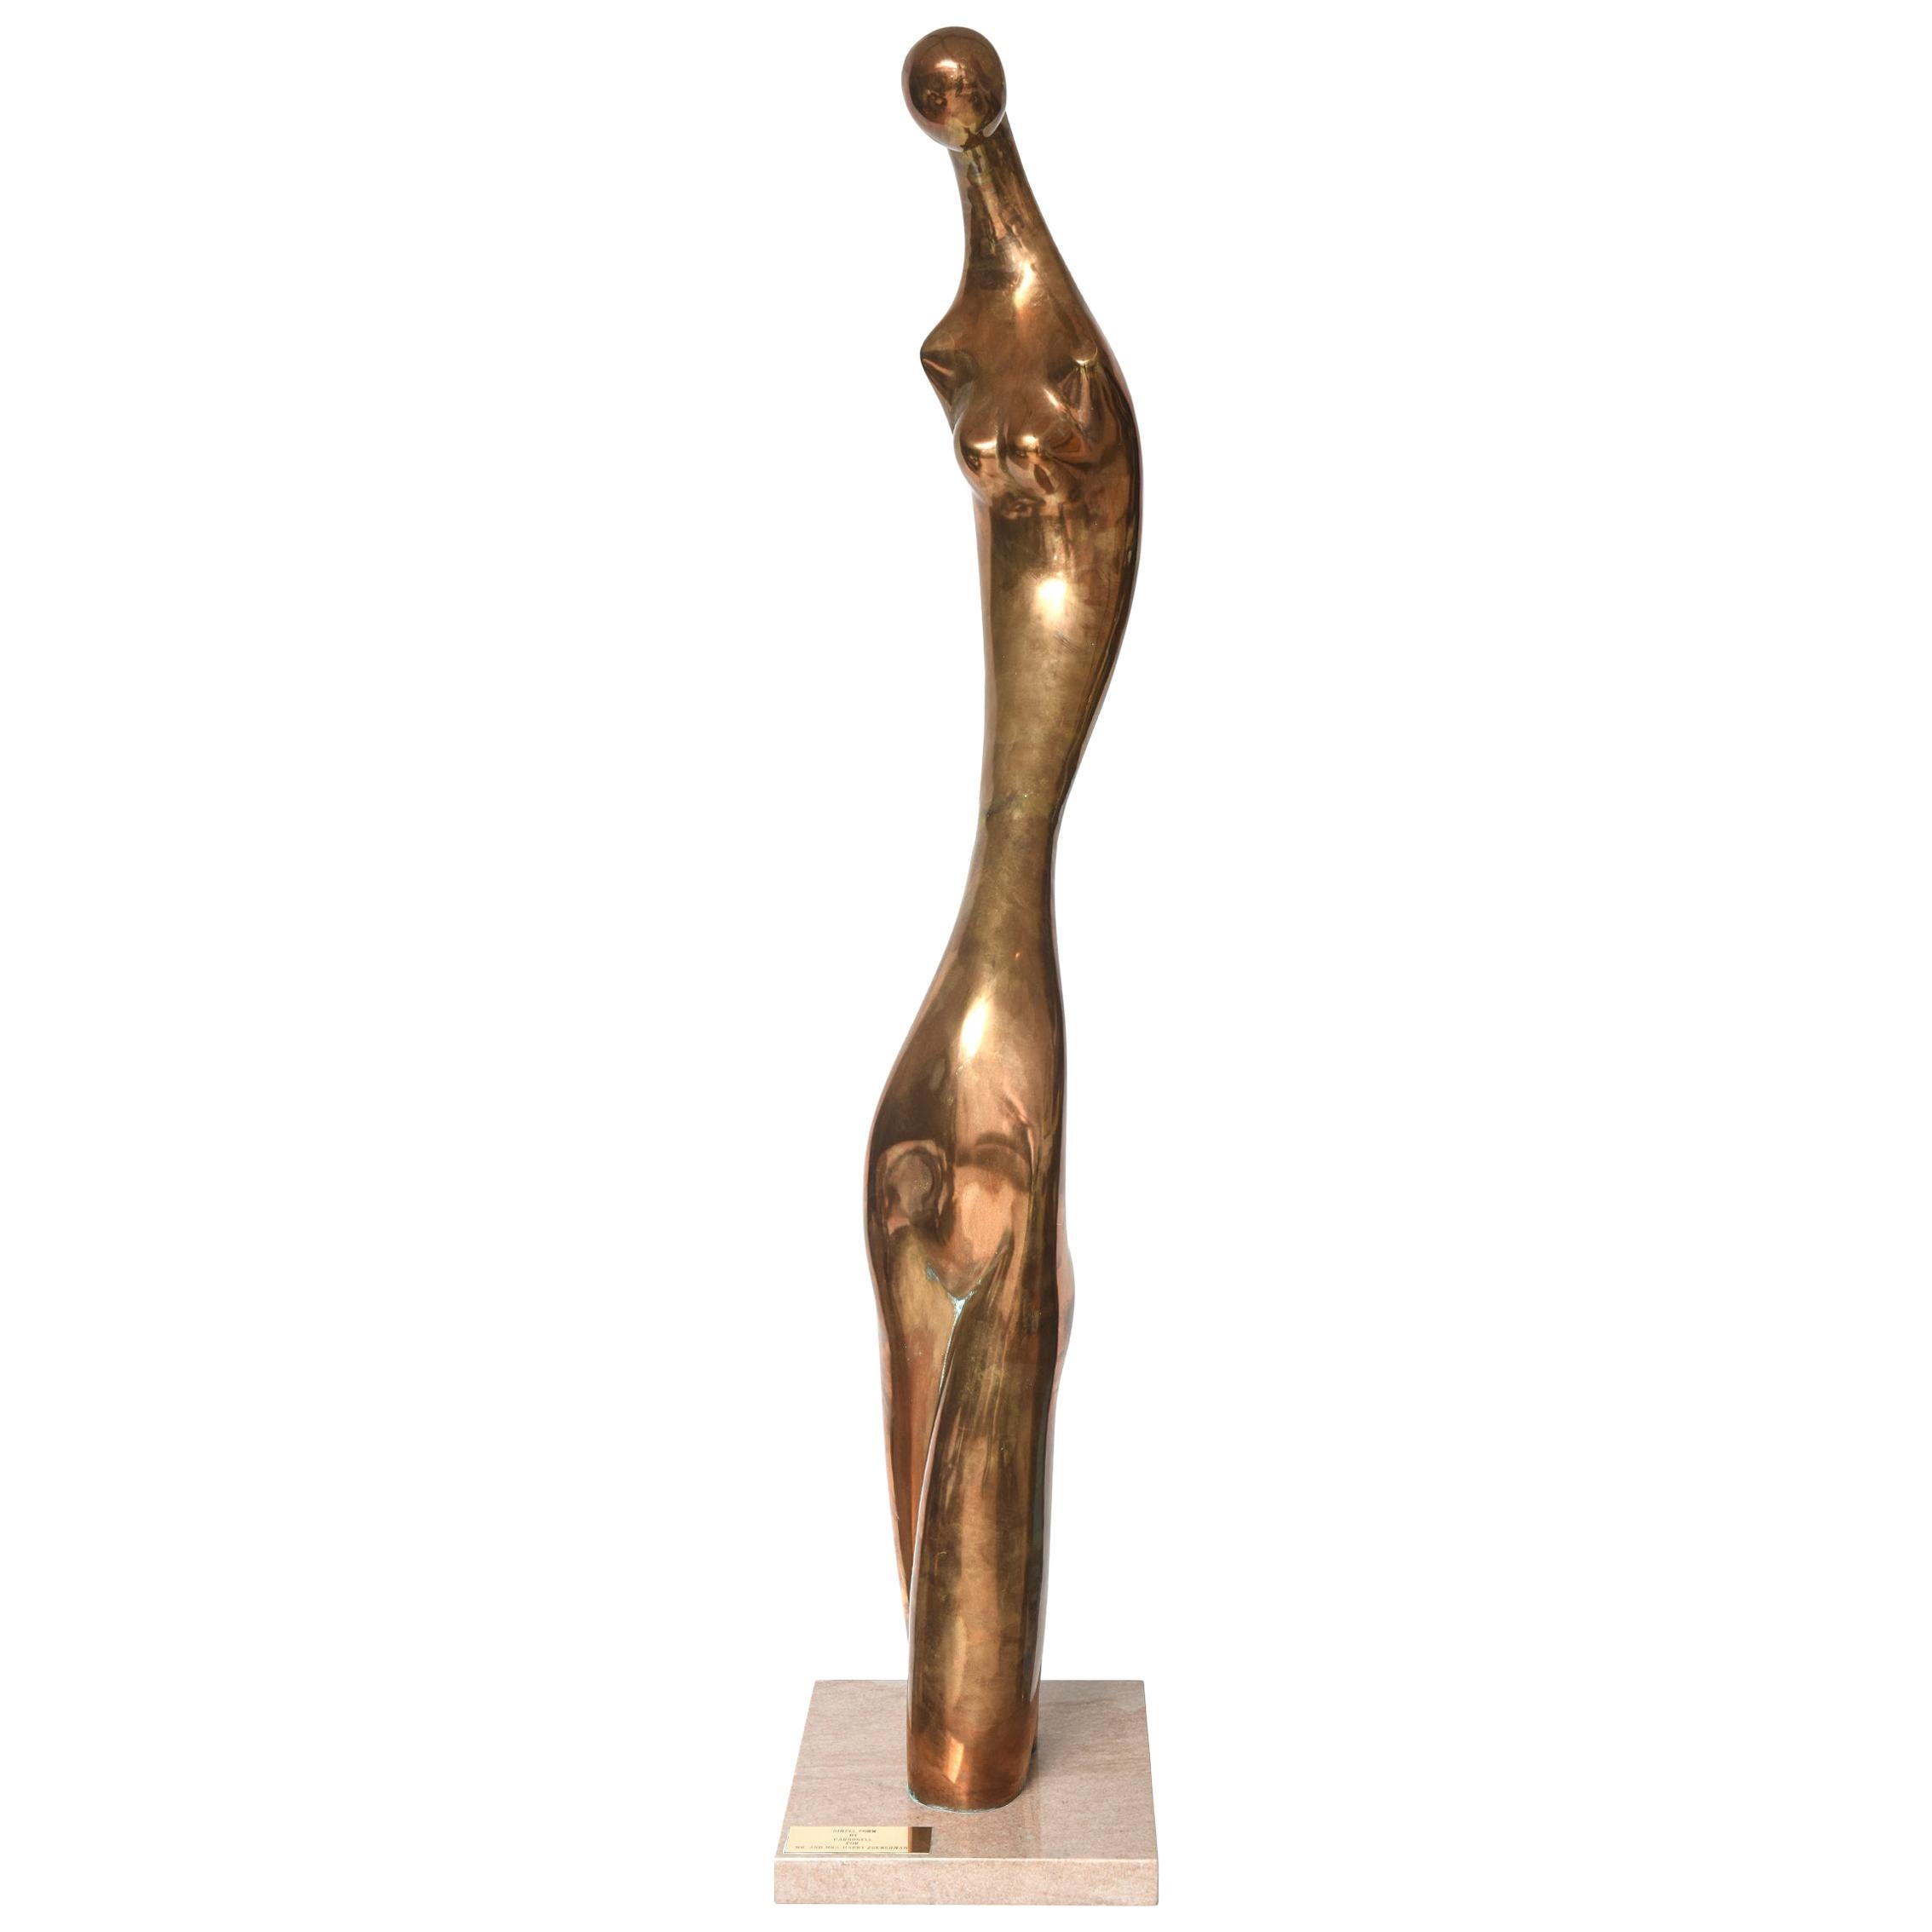 Sculpture en bronze de forme simple de Manuel Carbonell, édition limitée, datant d'environ 1976